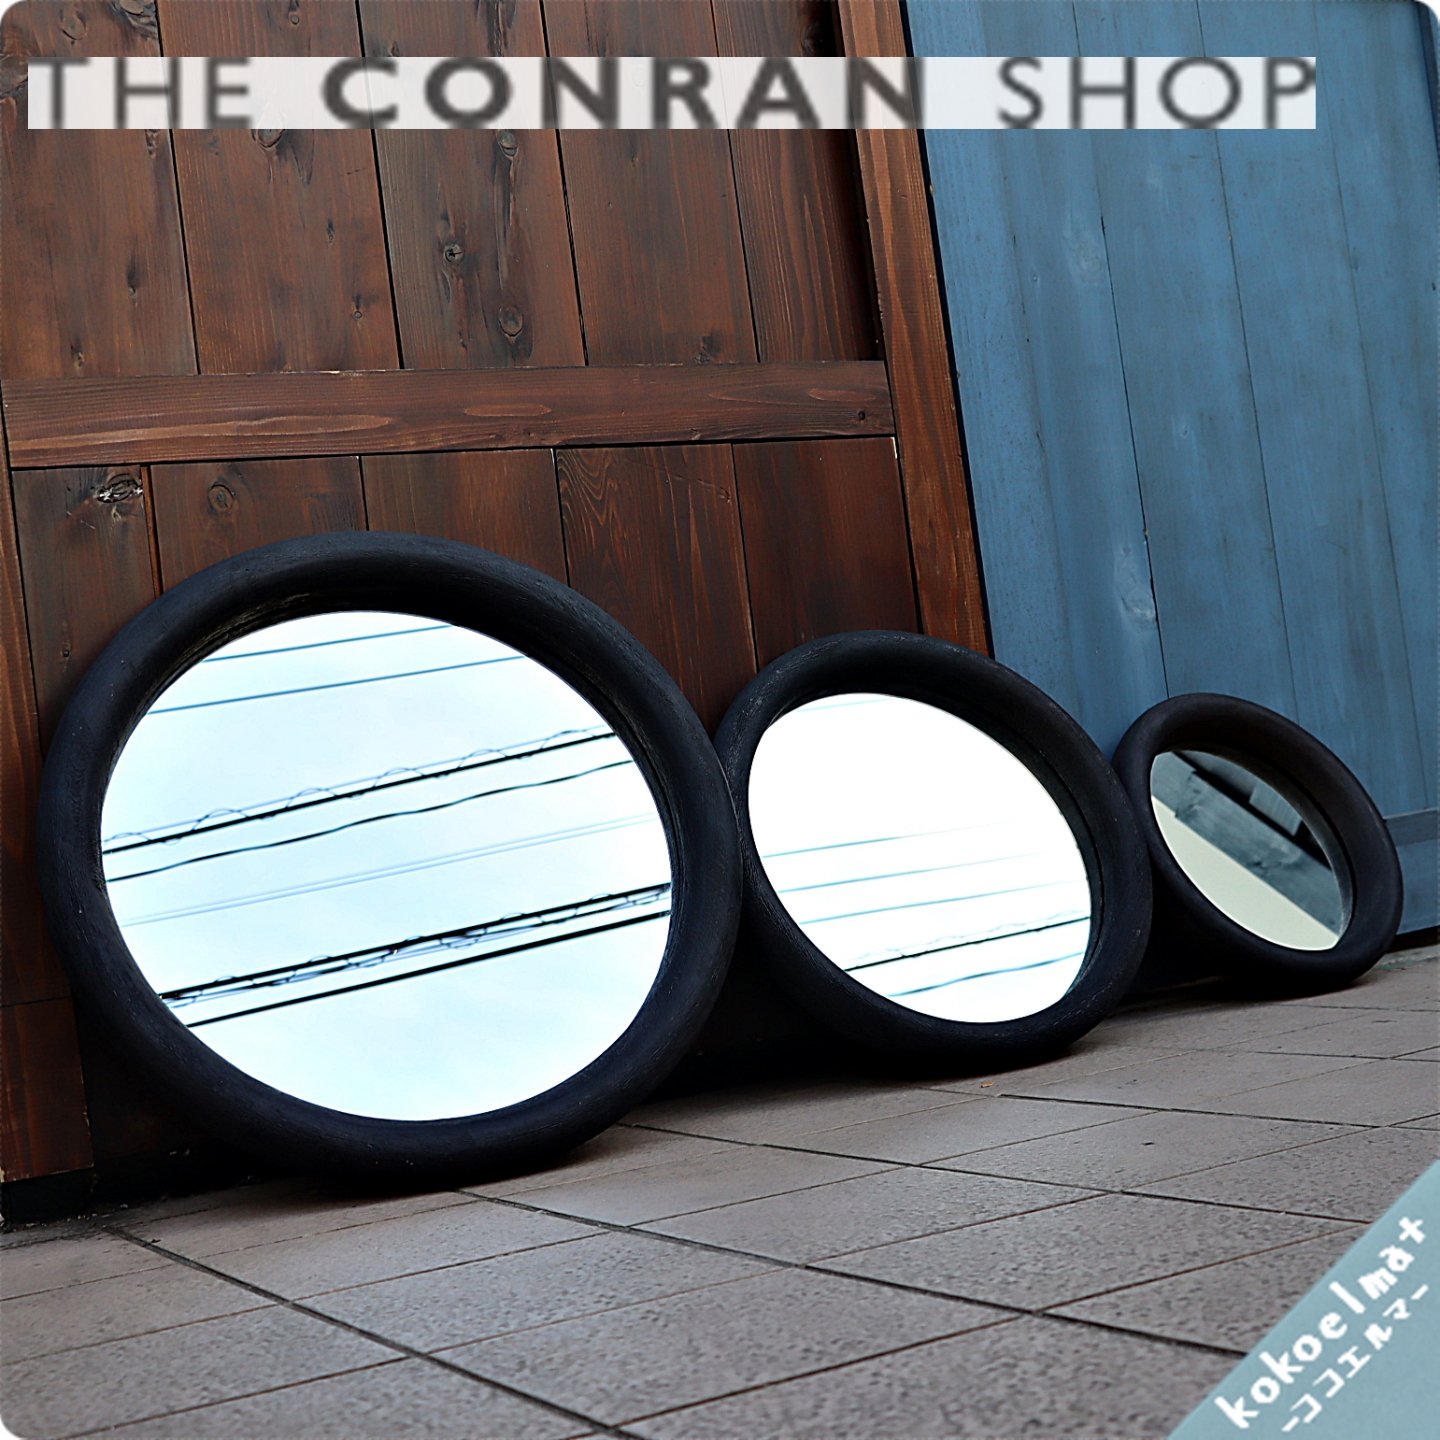 THE CONRAN SHOP(コンランショップ) ウォールミラー セット-agrohim82.ru